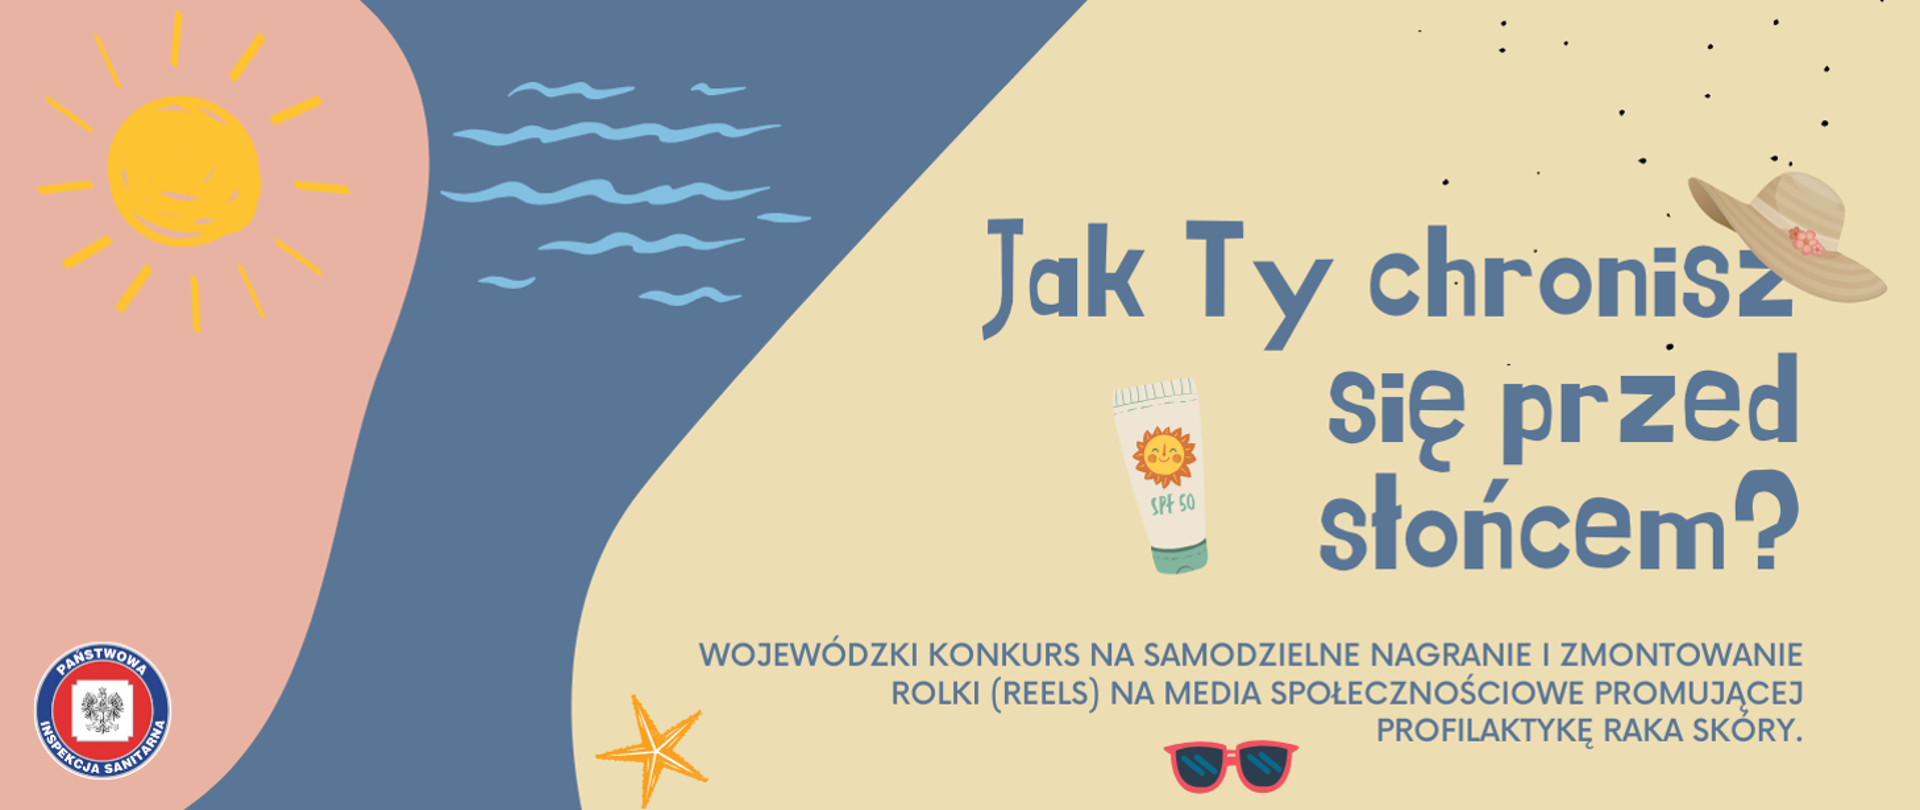 Grafika przedstawiająca słońce, wodę oraz plażę, na której widnieje napis: 'Jak Ty się chronisz przed słońcem?' - Wojewódzki konkurs na samodzielne nagranie i zmontowanie rolki (reels) na media społecznościowe promującej profilaktykę raka skóry